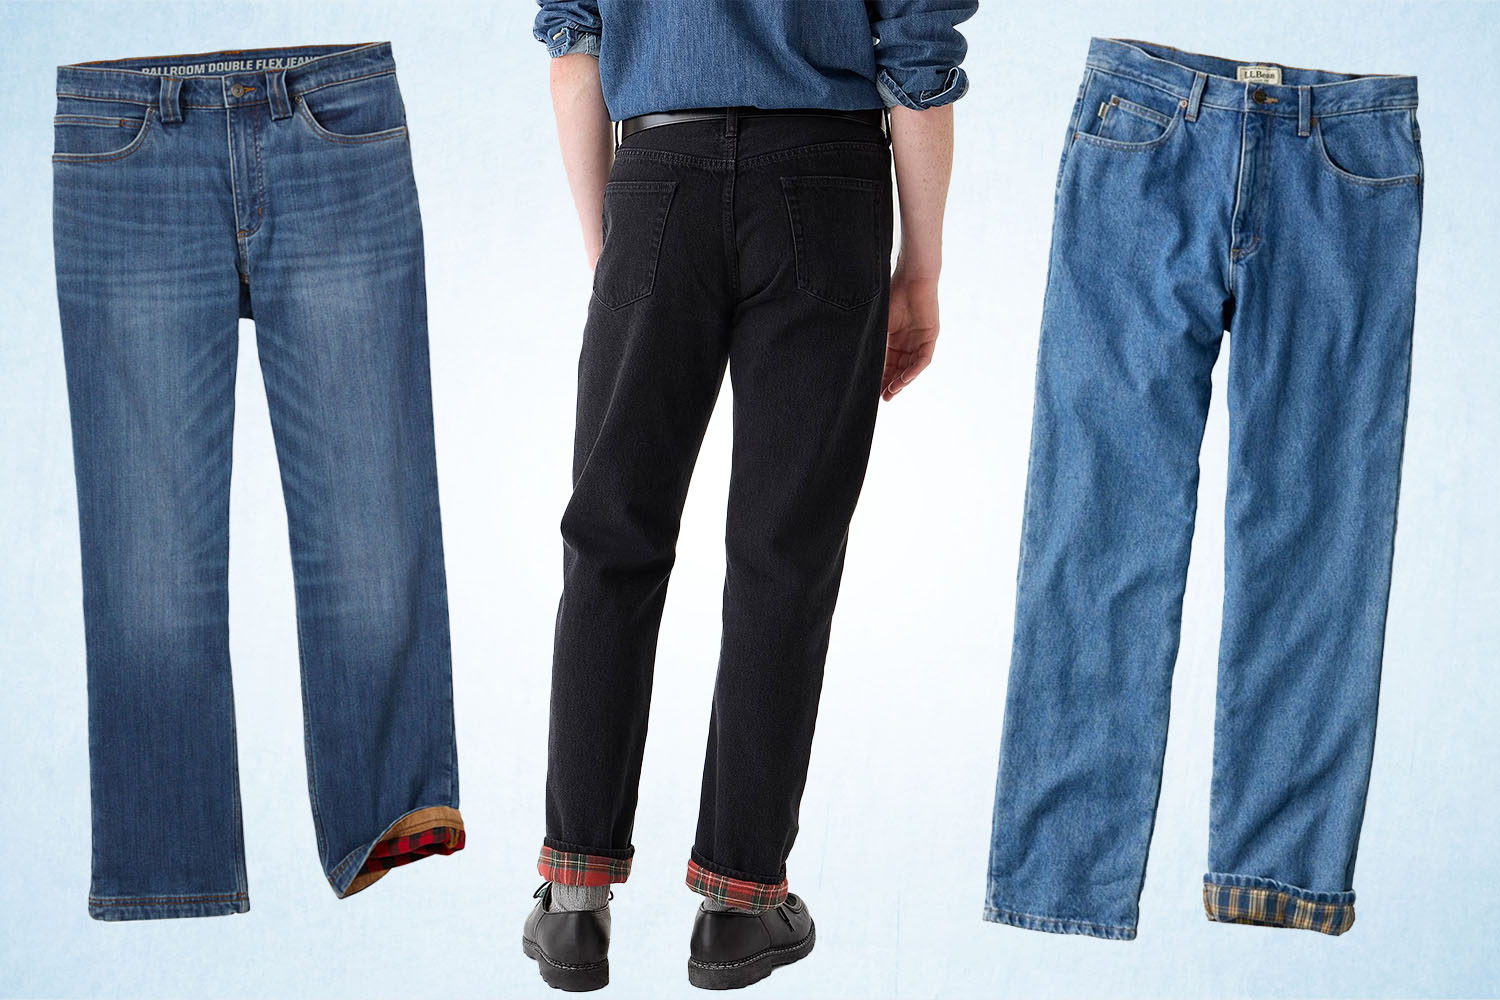 The 11 Best Men's Flannel Lined Jeans - InsideHook